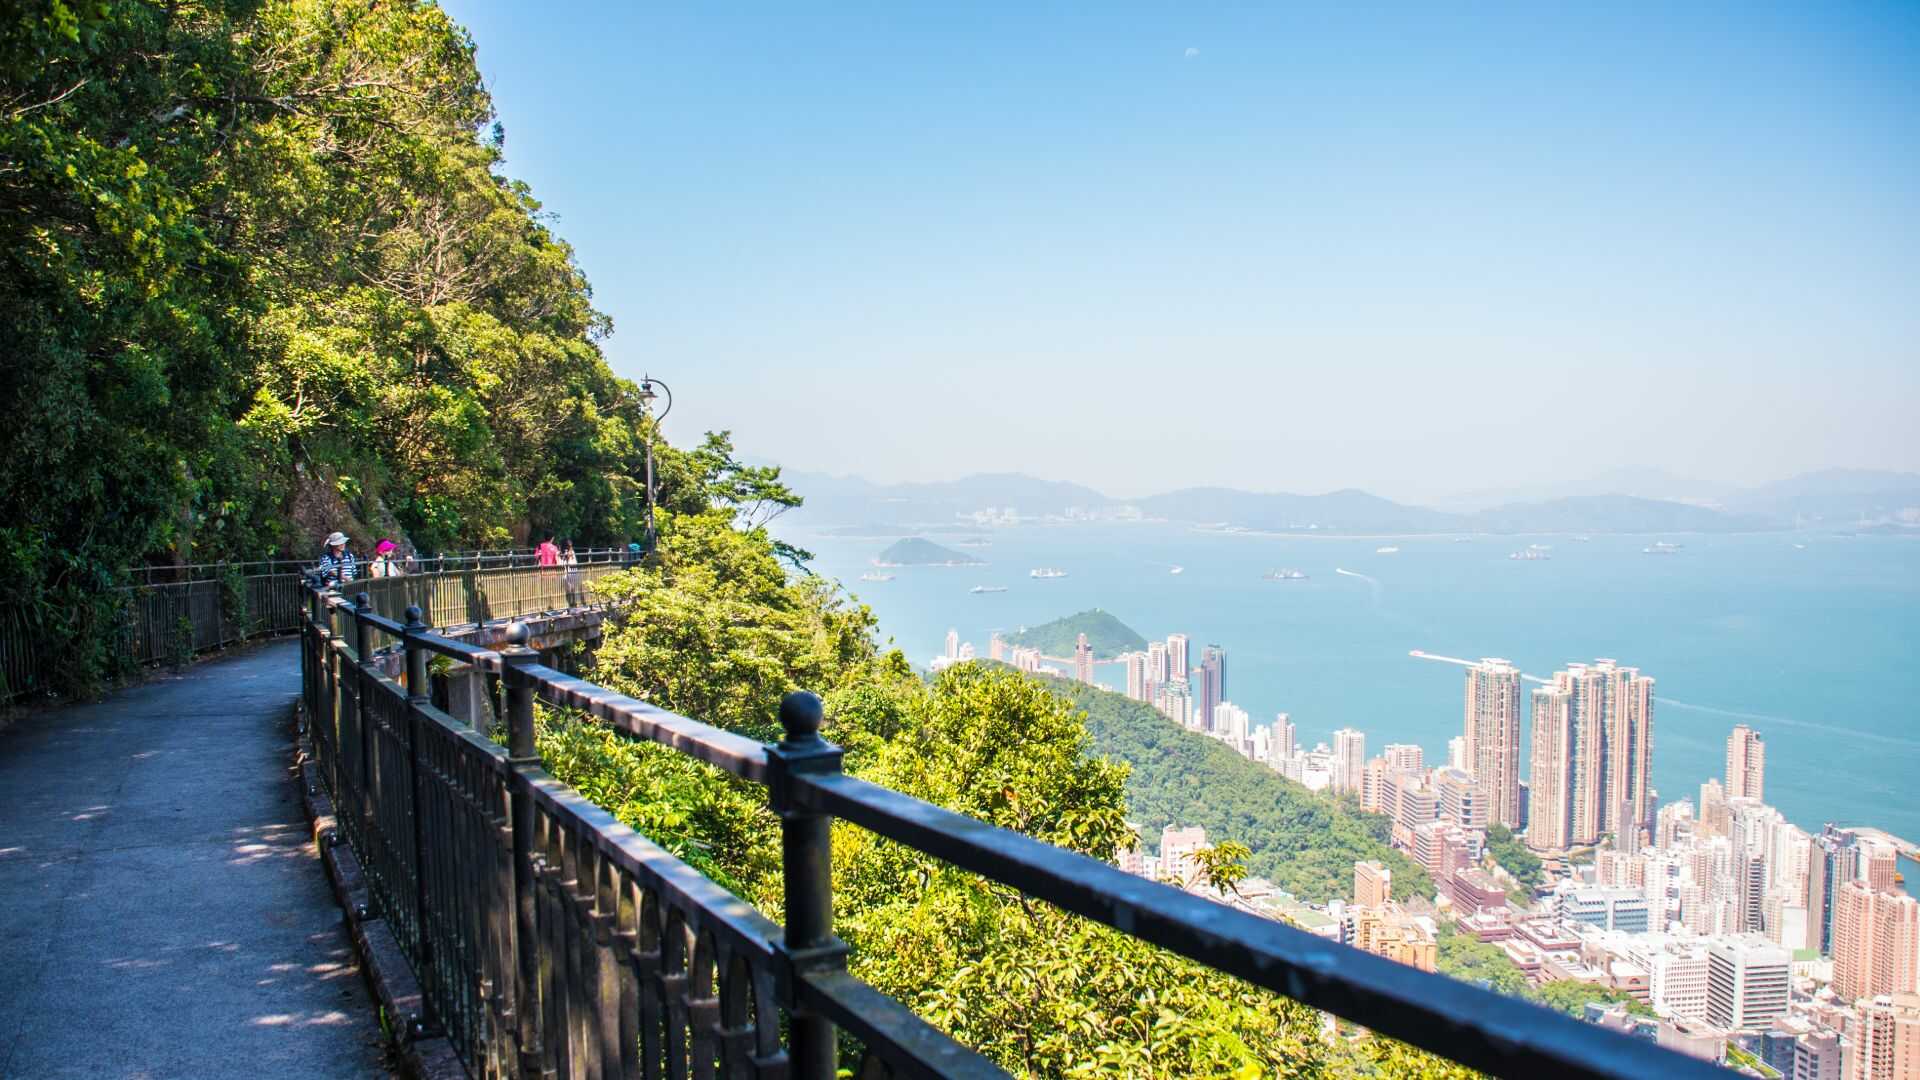 Du lịch Hồng Kông 4 ngày dịp Lễ 30 tháng 4 khởi hành từ Tp.HCM